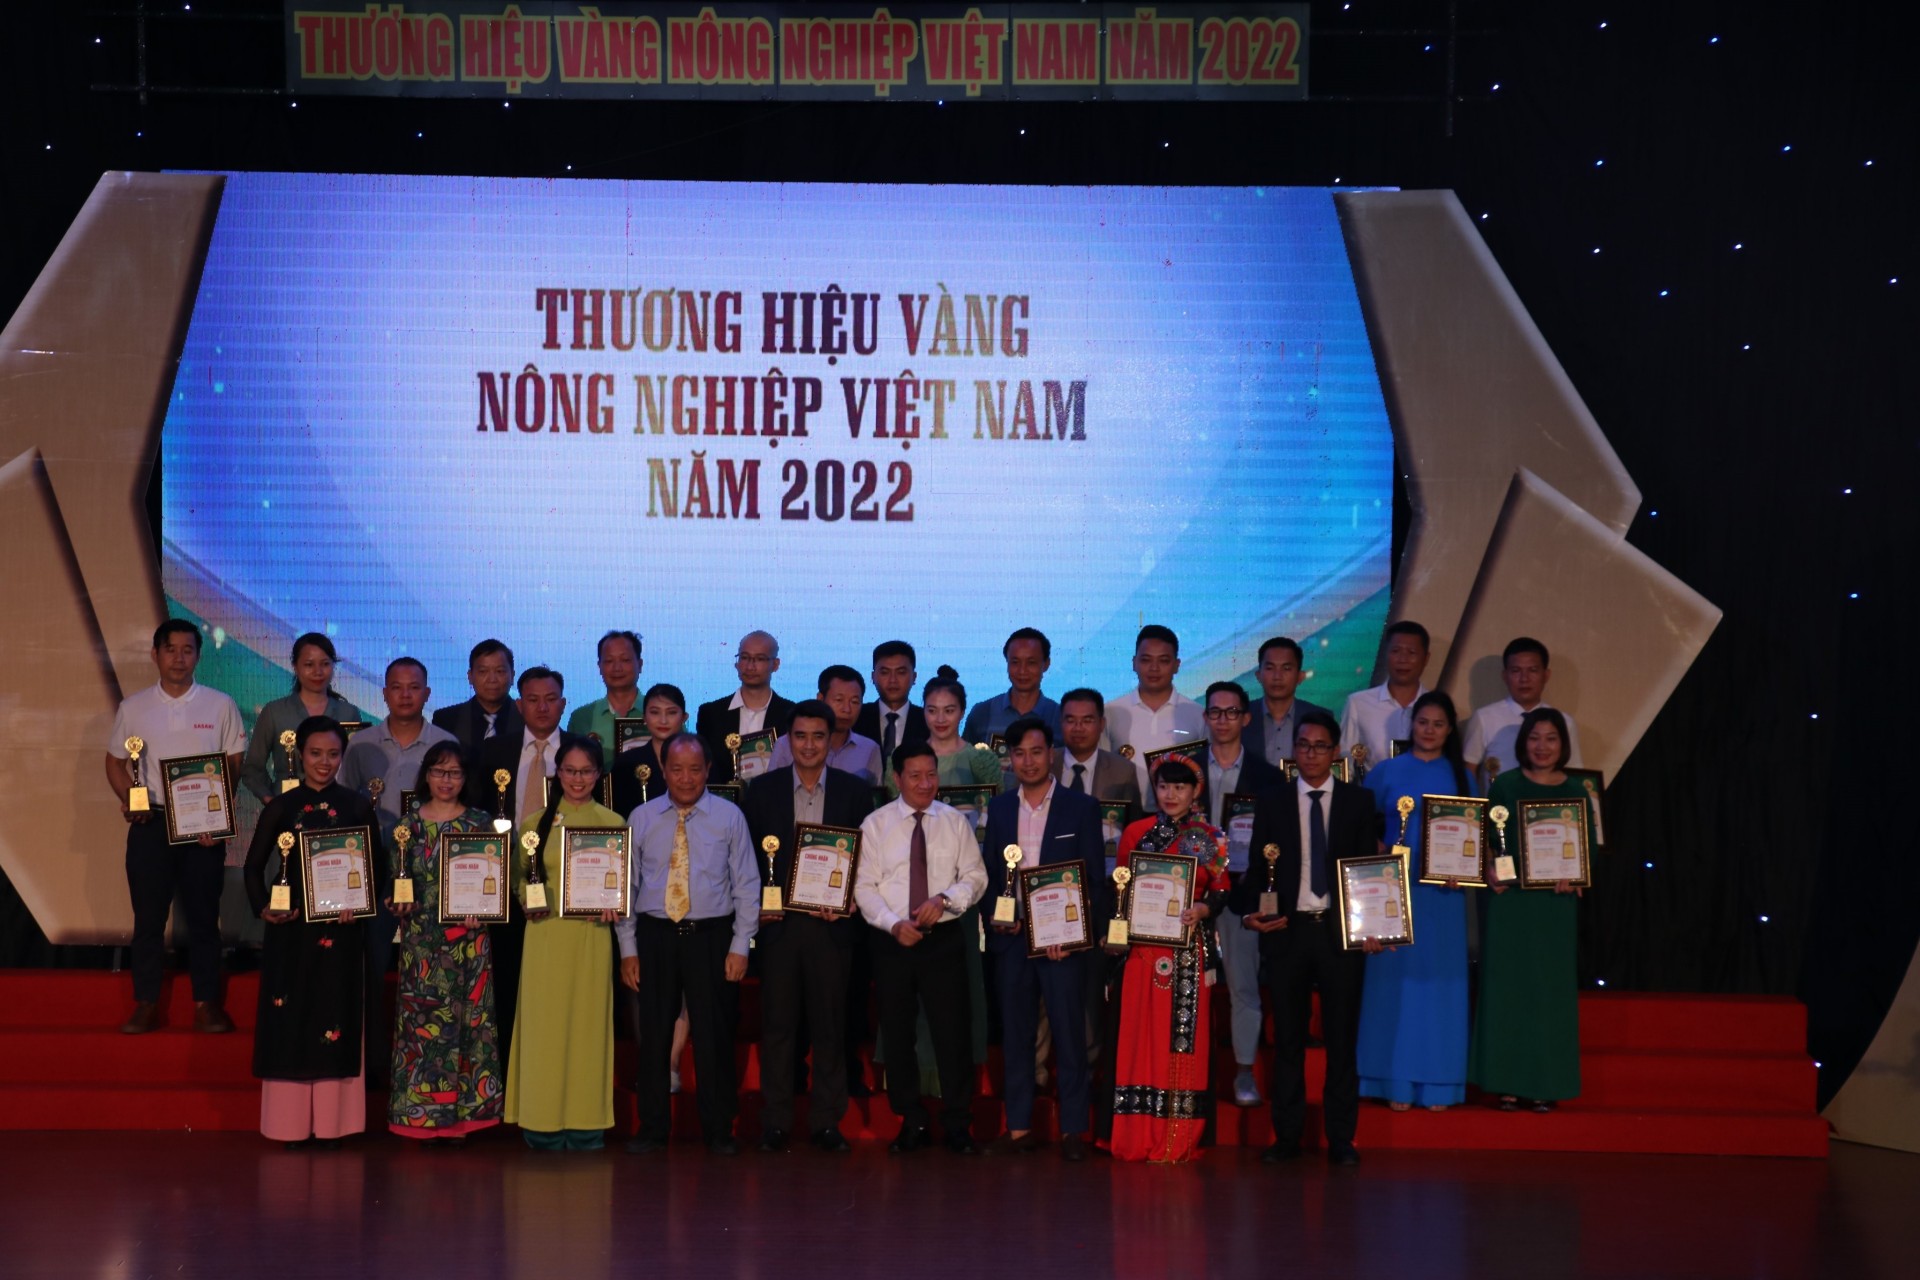 Đại diện BTC trao tặng và vinh danh những thương hiệu vàng Nông nghiệp Việt Nam 2022 (Ảnh: PV)